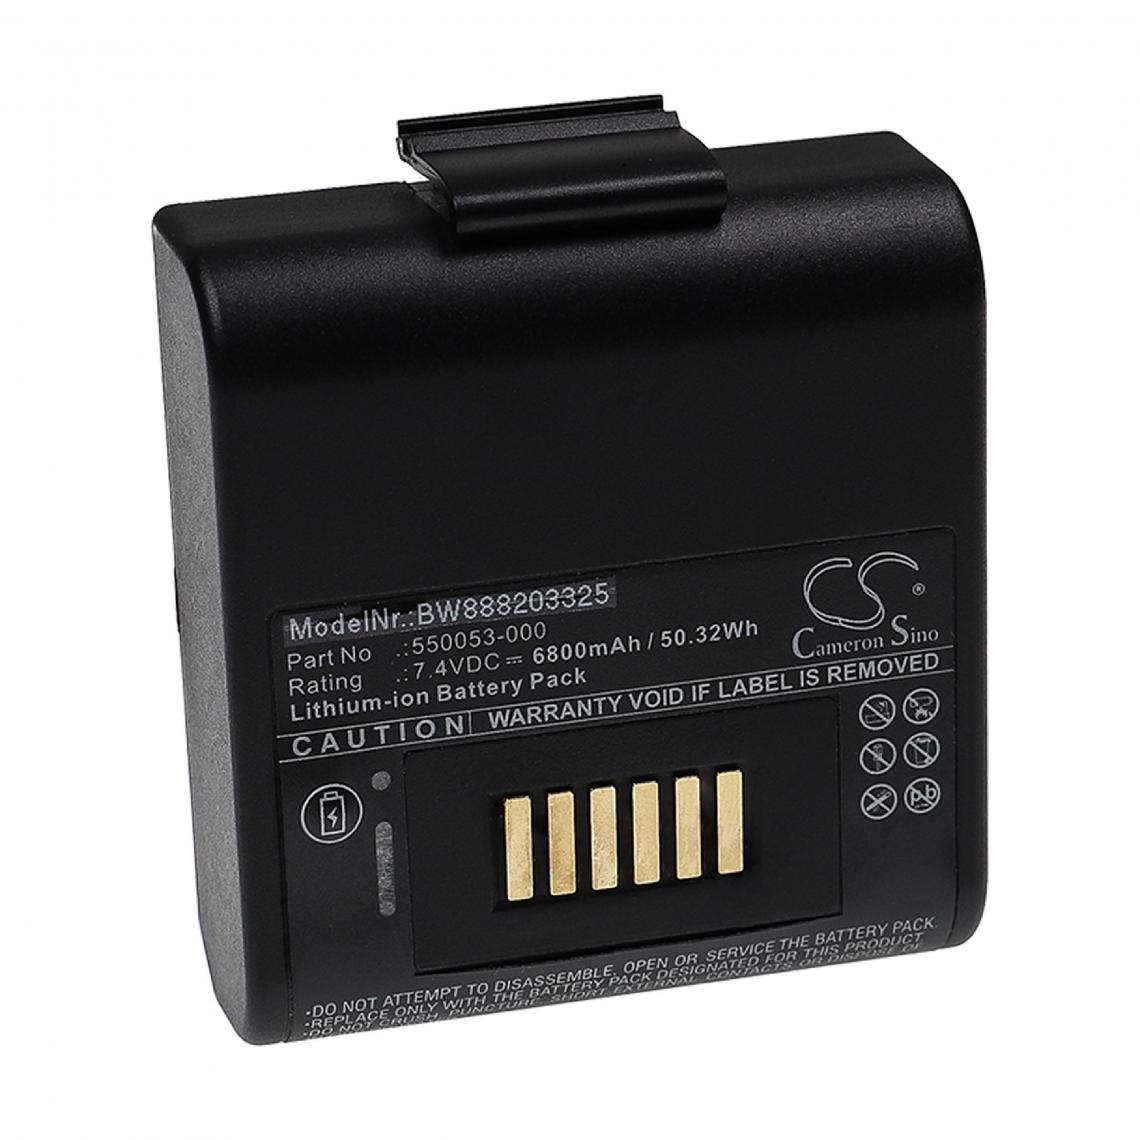 Vhbw - vhbw Batterie remplacement pour Oneil 550053-000 pour imprimante, scanner, imprimante d'étiquettes (6800mAh, 7,4V, Li-ion) - Imprimante Jet d'encre